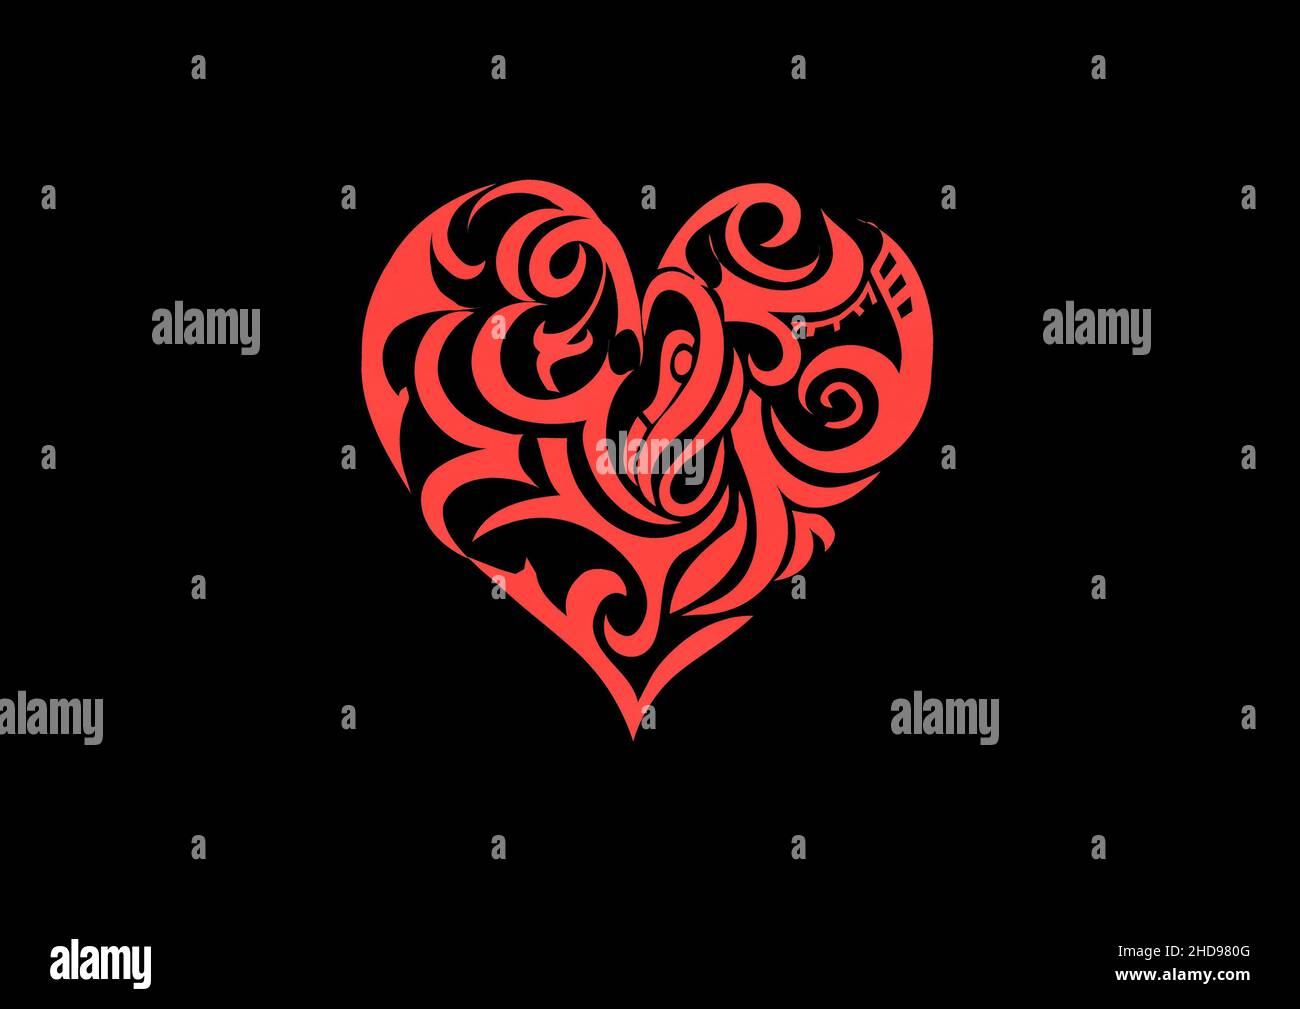 Love Hearts Stockfoto